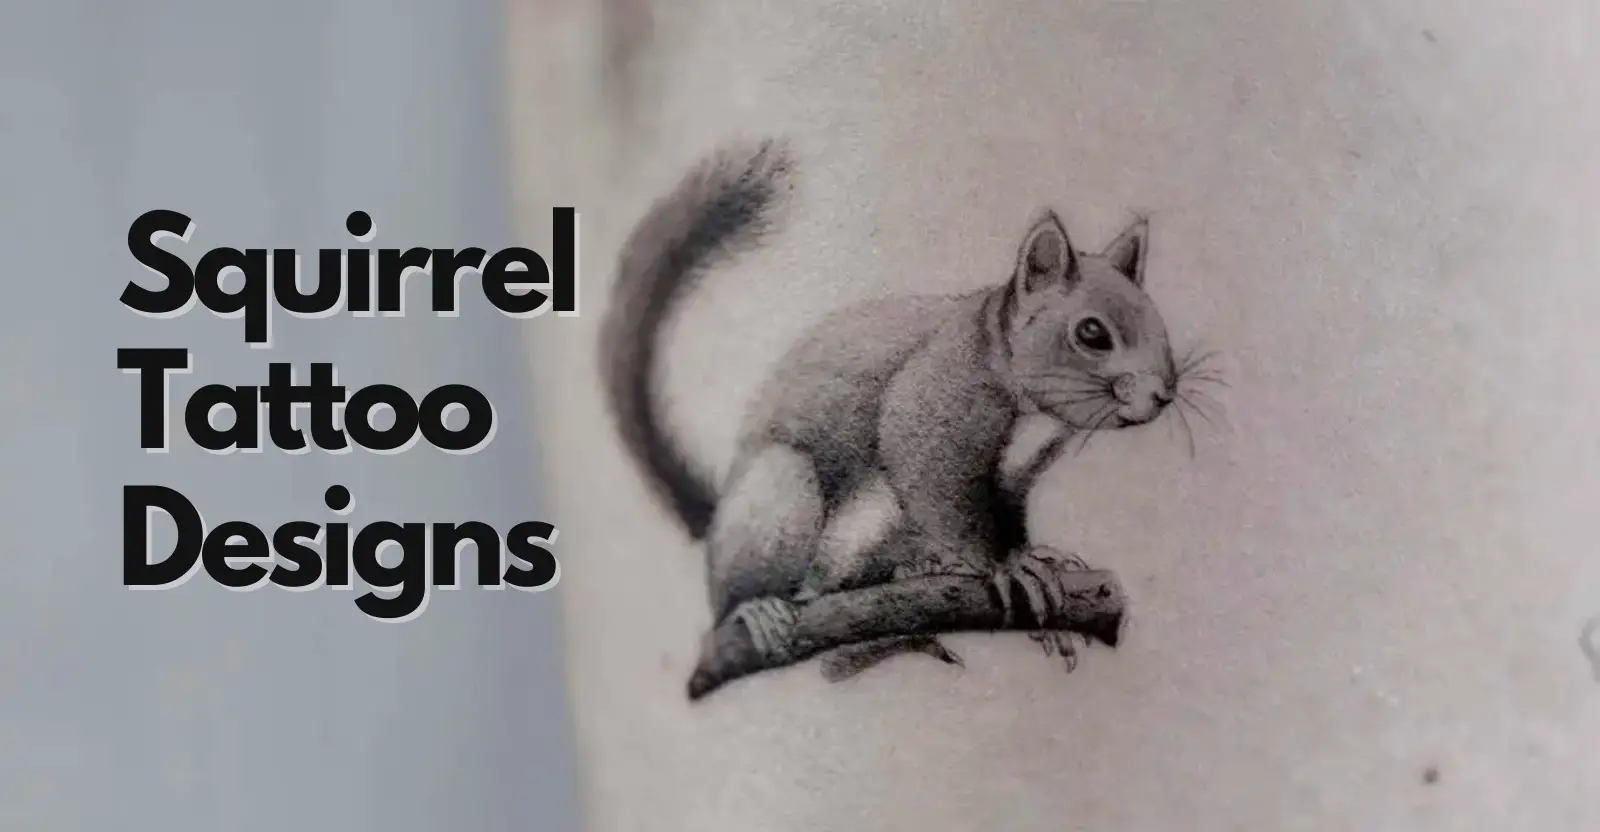 Squirrel tattoo design ideas